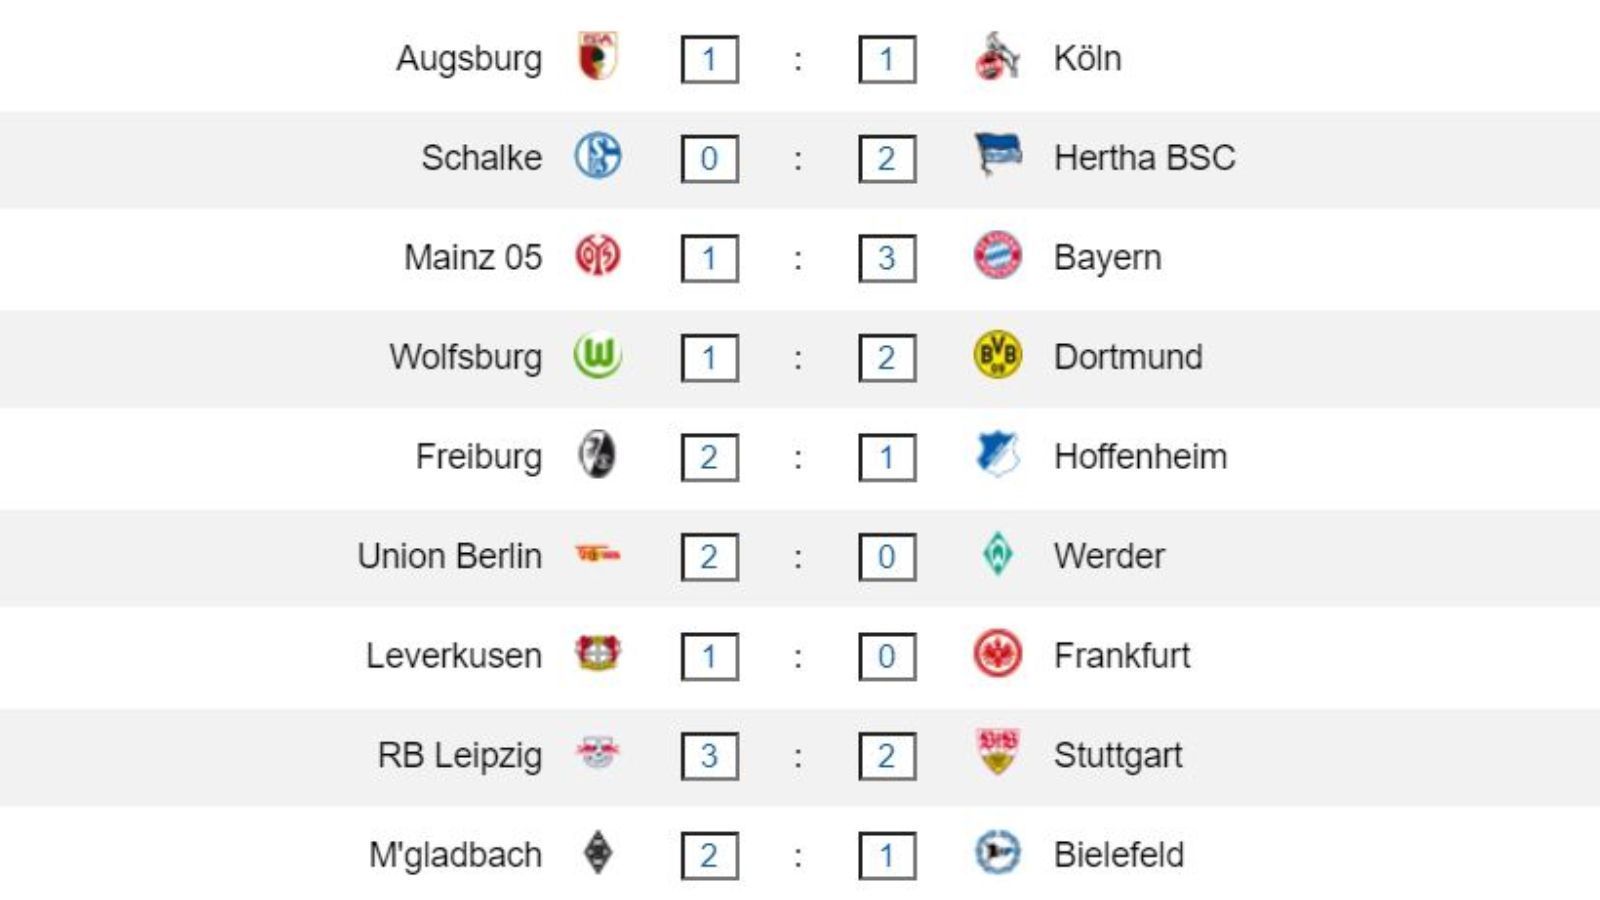 
                <strong>31. Spieltag Ergebnisse</strong><br>
                Die Ergebnisse des 31. Spieltags: Während Köln in Augsburg nicht über ein 1:1 hinaus kommt, gewinnt Hertha mit 2:0 auf Schalke. Die Bayern machen mit einem 3:1 in Mainz den neunten Meistertitel in Folge perfekt, parallel siegen die Dortmunder in ihrem persönlichen Endspiel um die Champions League in Wolfsburg mit 2:1 bei gleichzeitigem Patzer der Frankfurter Eintracht in Leverkusen. Werder Bremen kassiert in Berlin die siebte Niederlage in Serie und stürzt weiter ab.
              